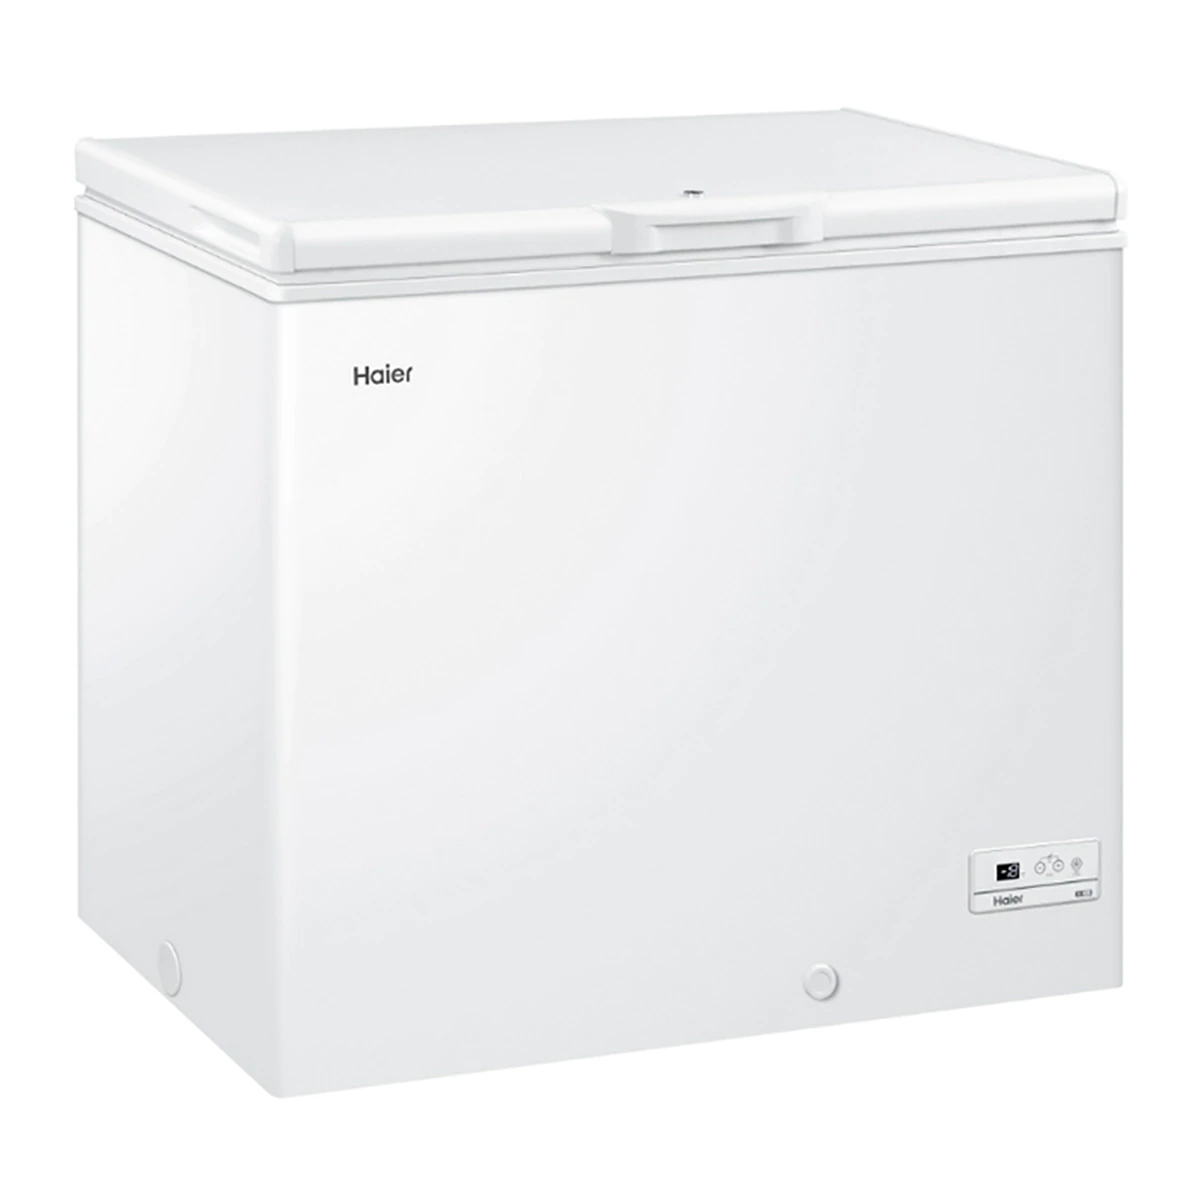 Congelador horizontal Haier HCE-203R de 203 litros con cesto metálico y cerradura